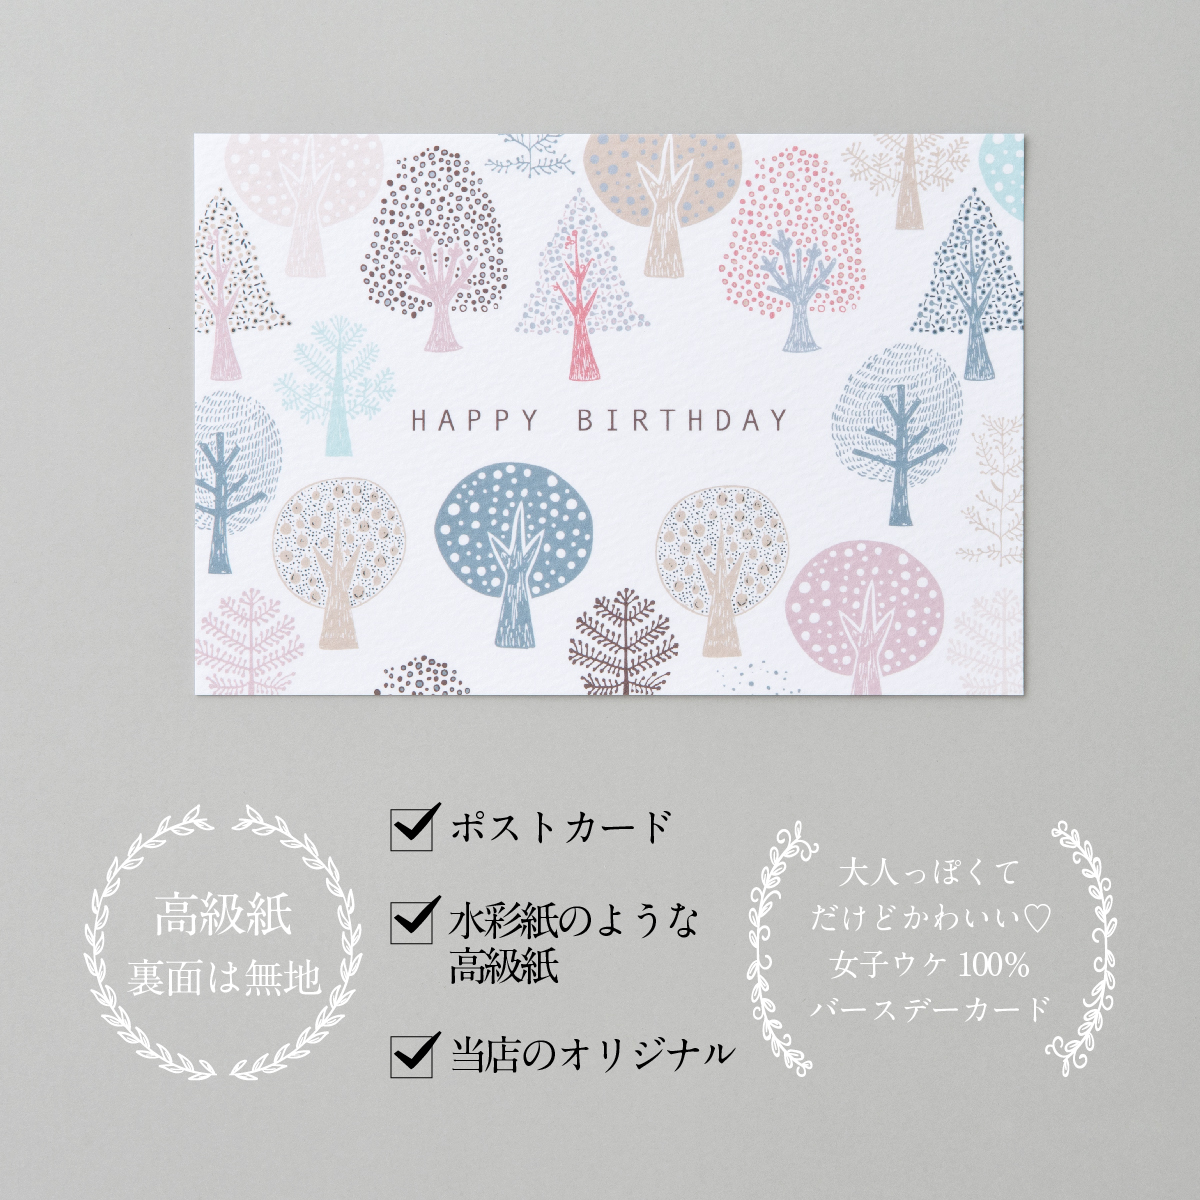 可愛いイラストのバースデーカード 可愛いデザインが人気です バースデーカード 森ピンク Birthday Card グリーティングカード ふるさと割 感謝 おしゃれ 誕生日カード メッセージカード プレゼント かわいい ギフト